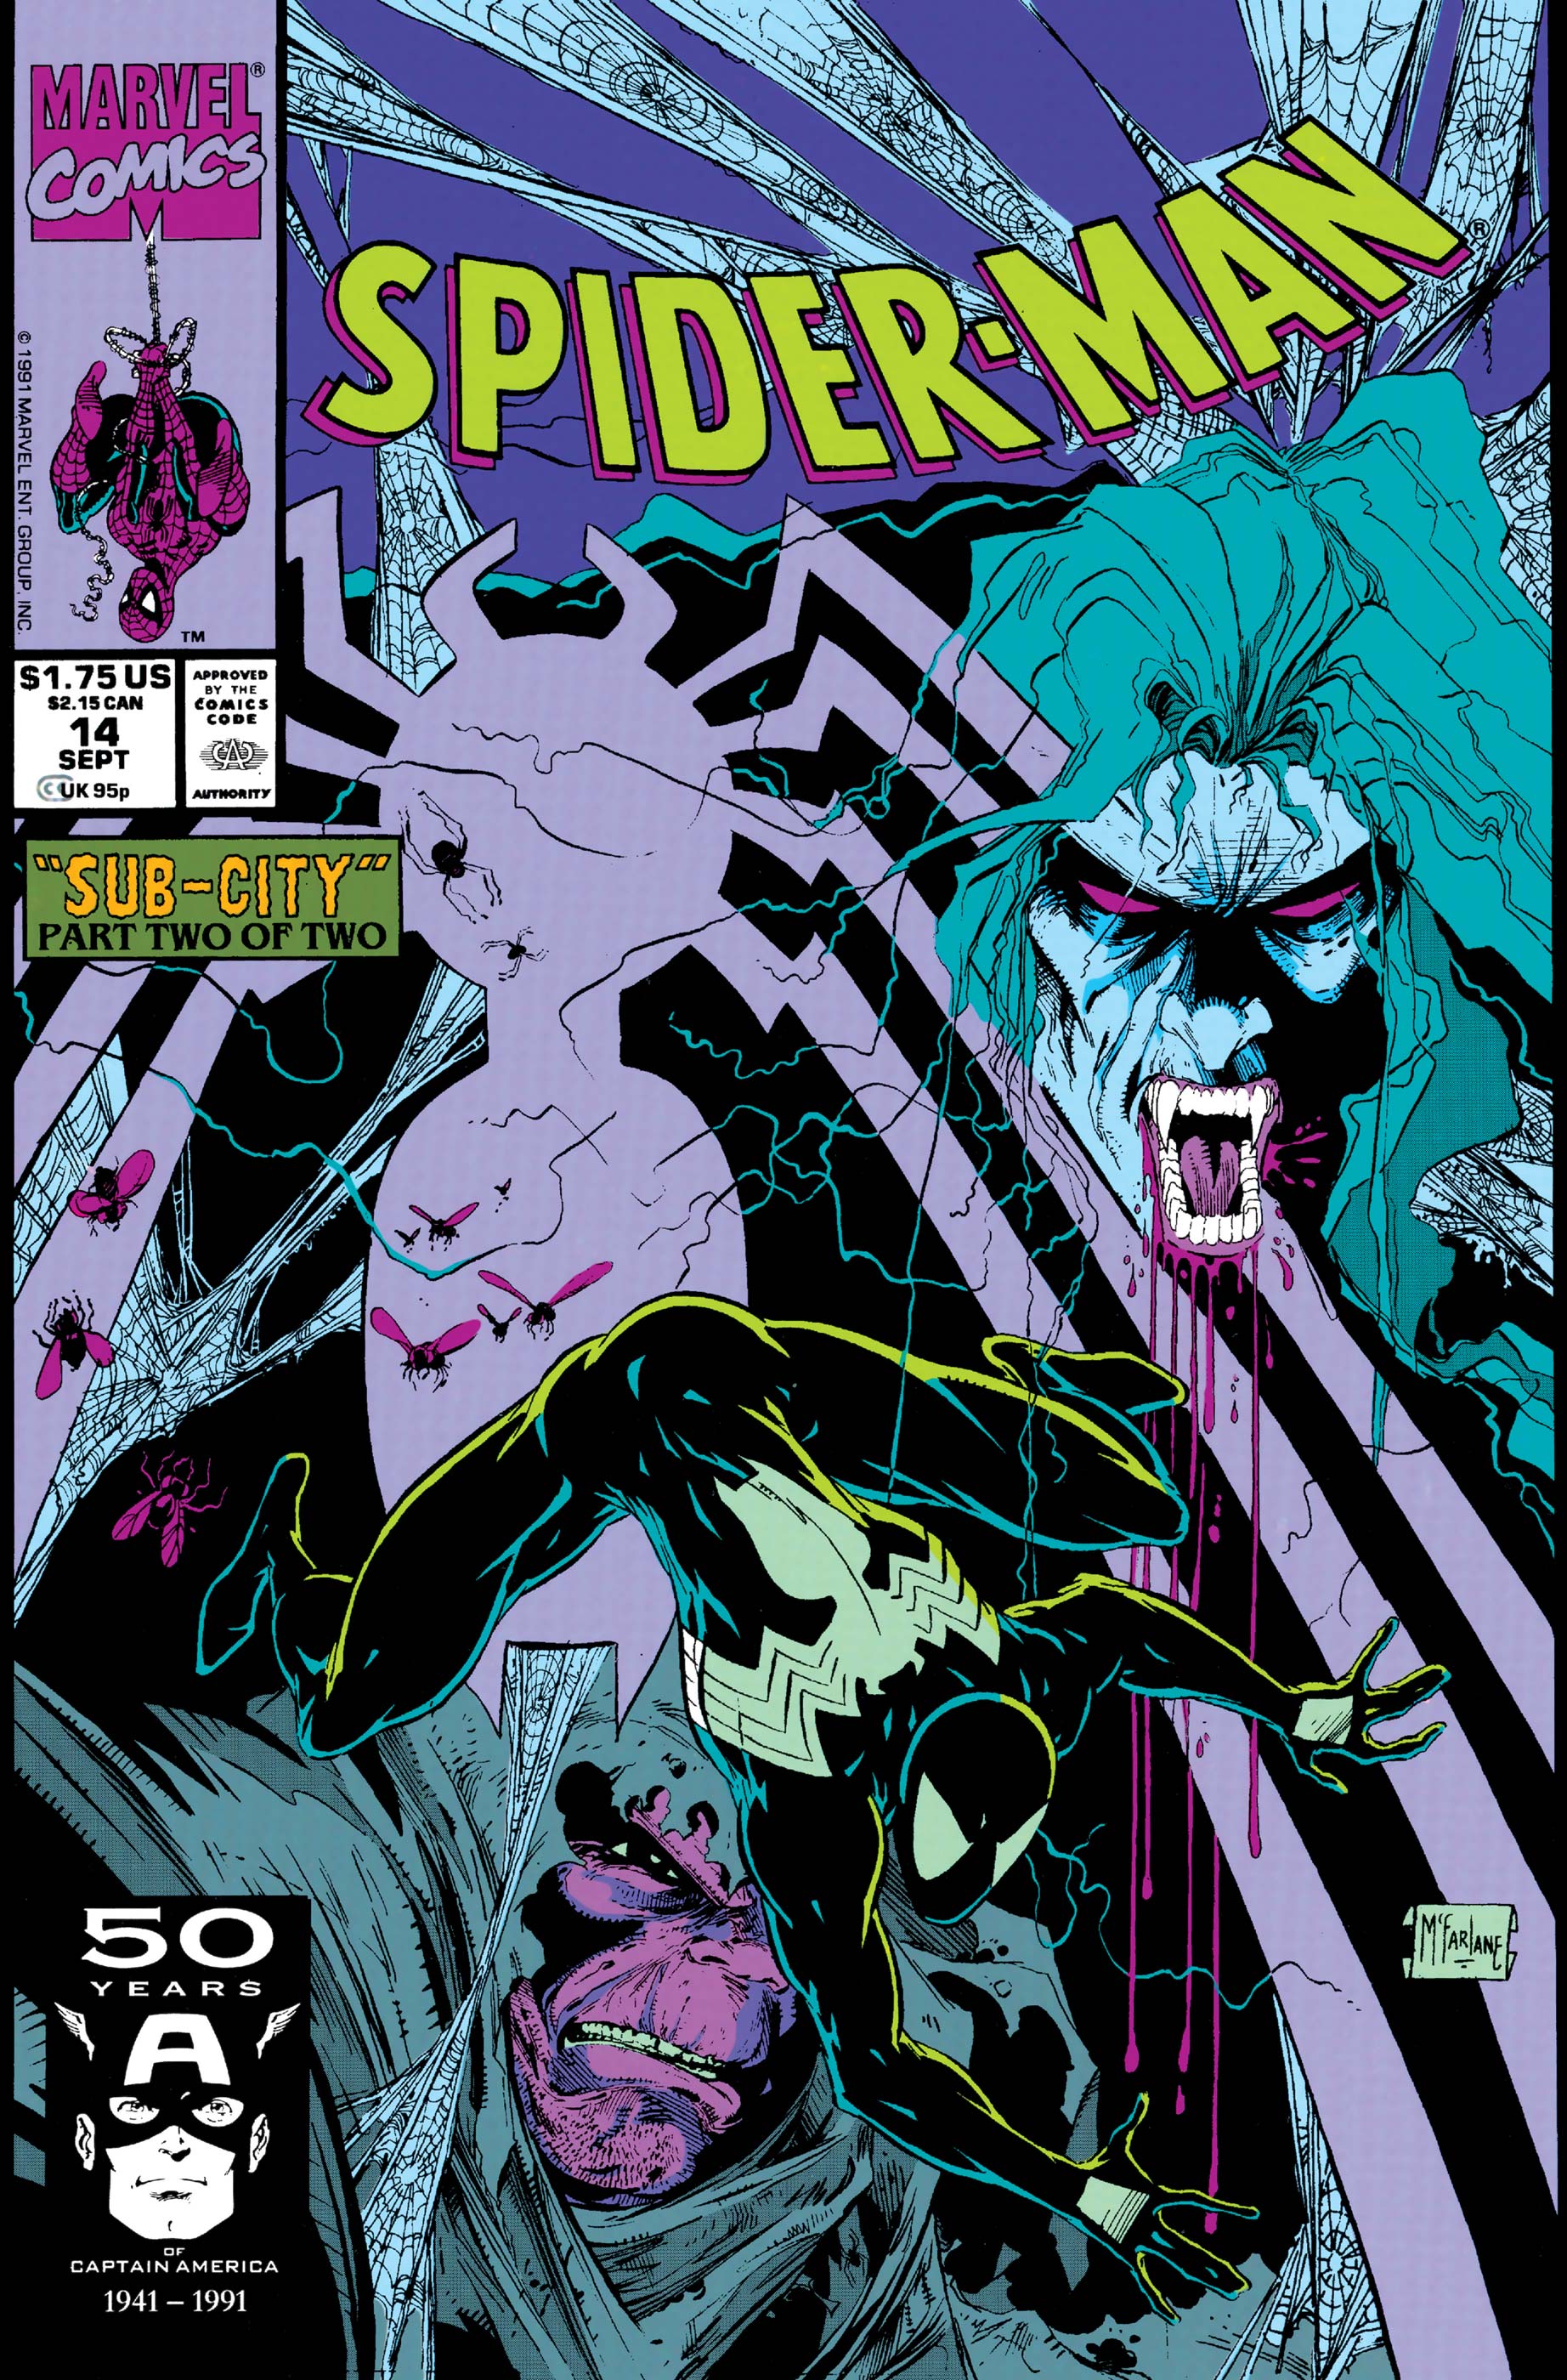 Spider-Man (1990) #14